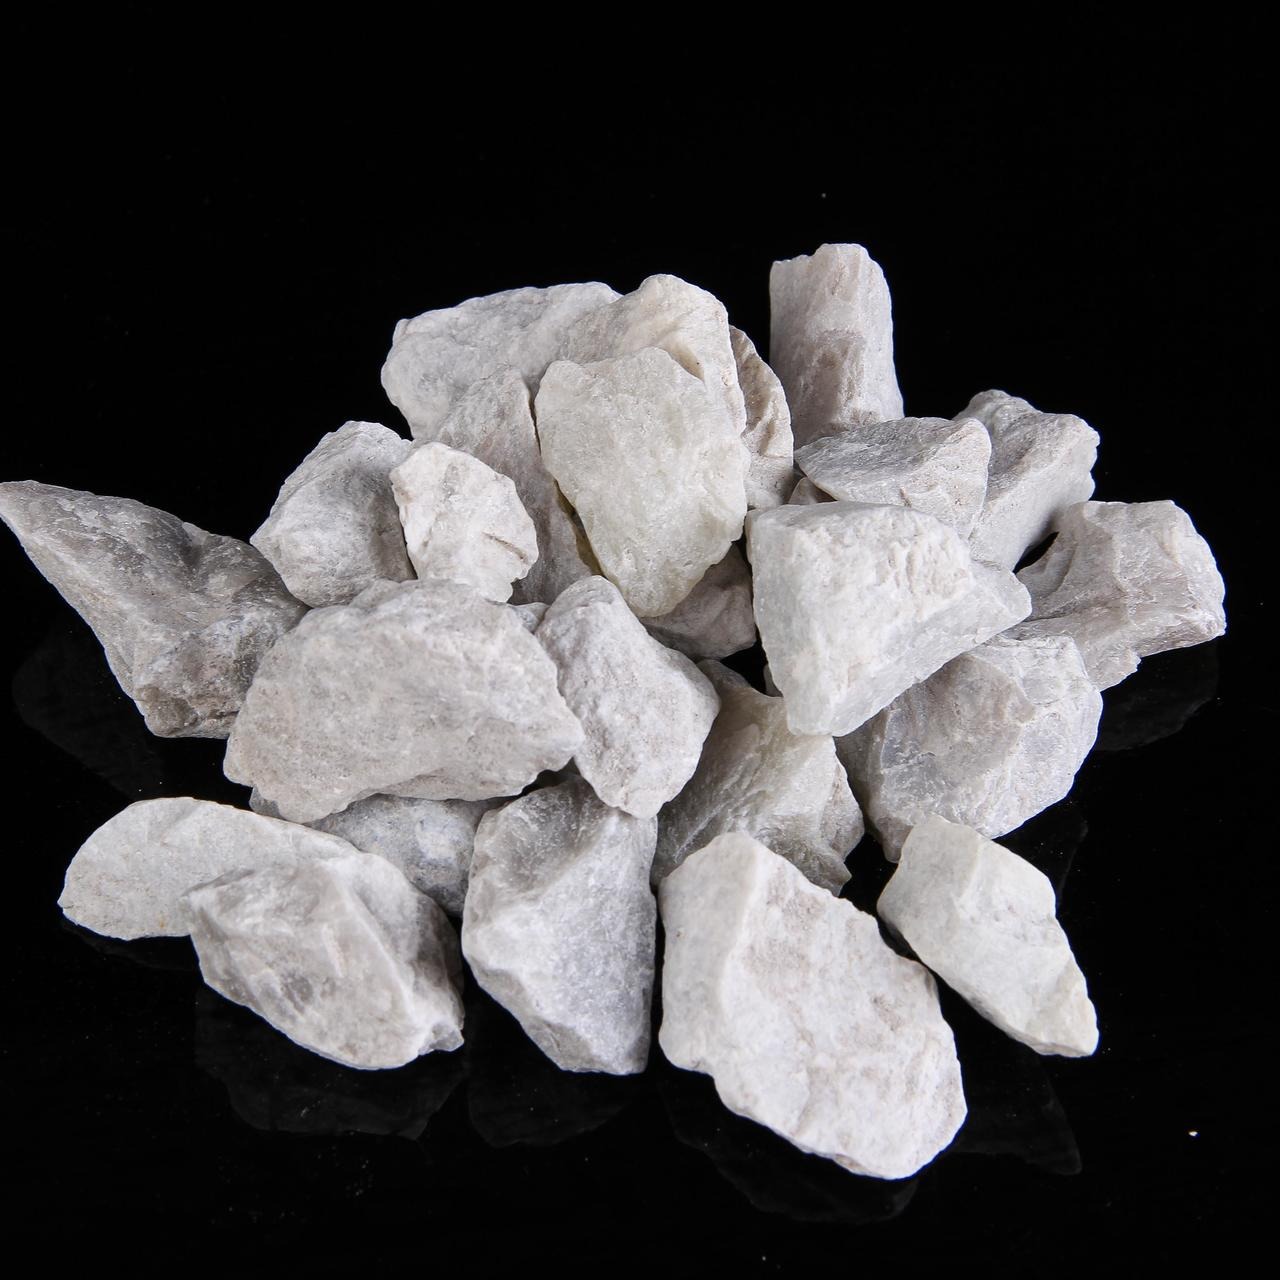 52-66% 水镁石氢氧化镁 价格优越 水镁石矿山厂家直供 煅烧水镁石 水镁石原矿2